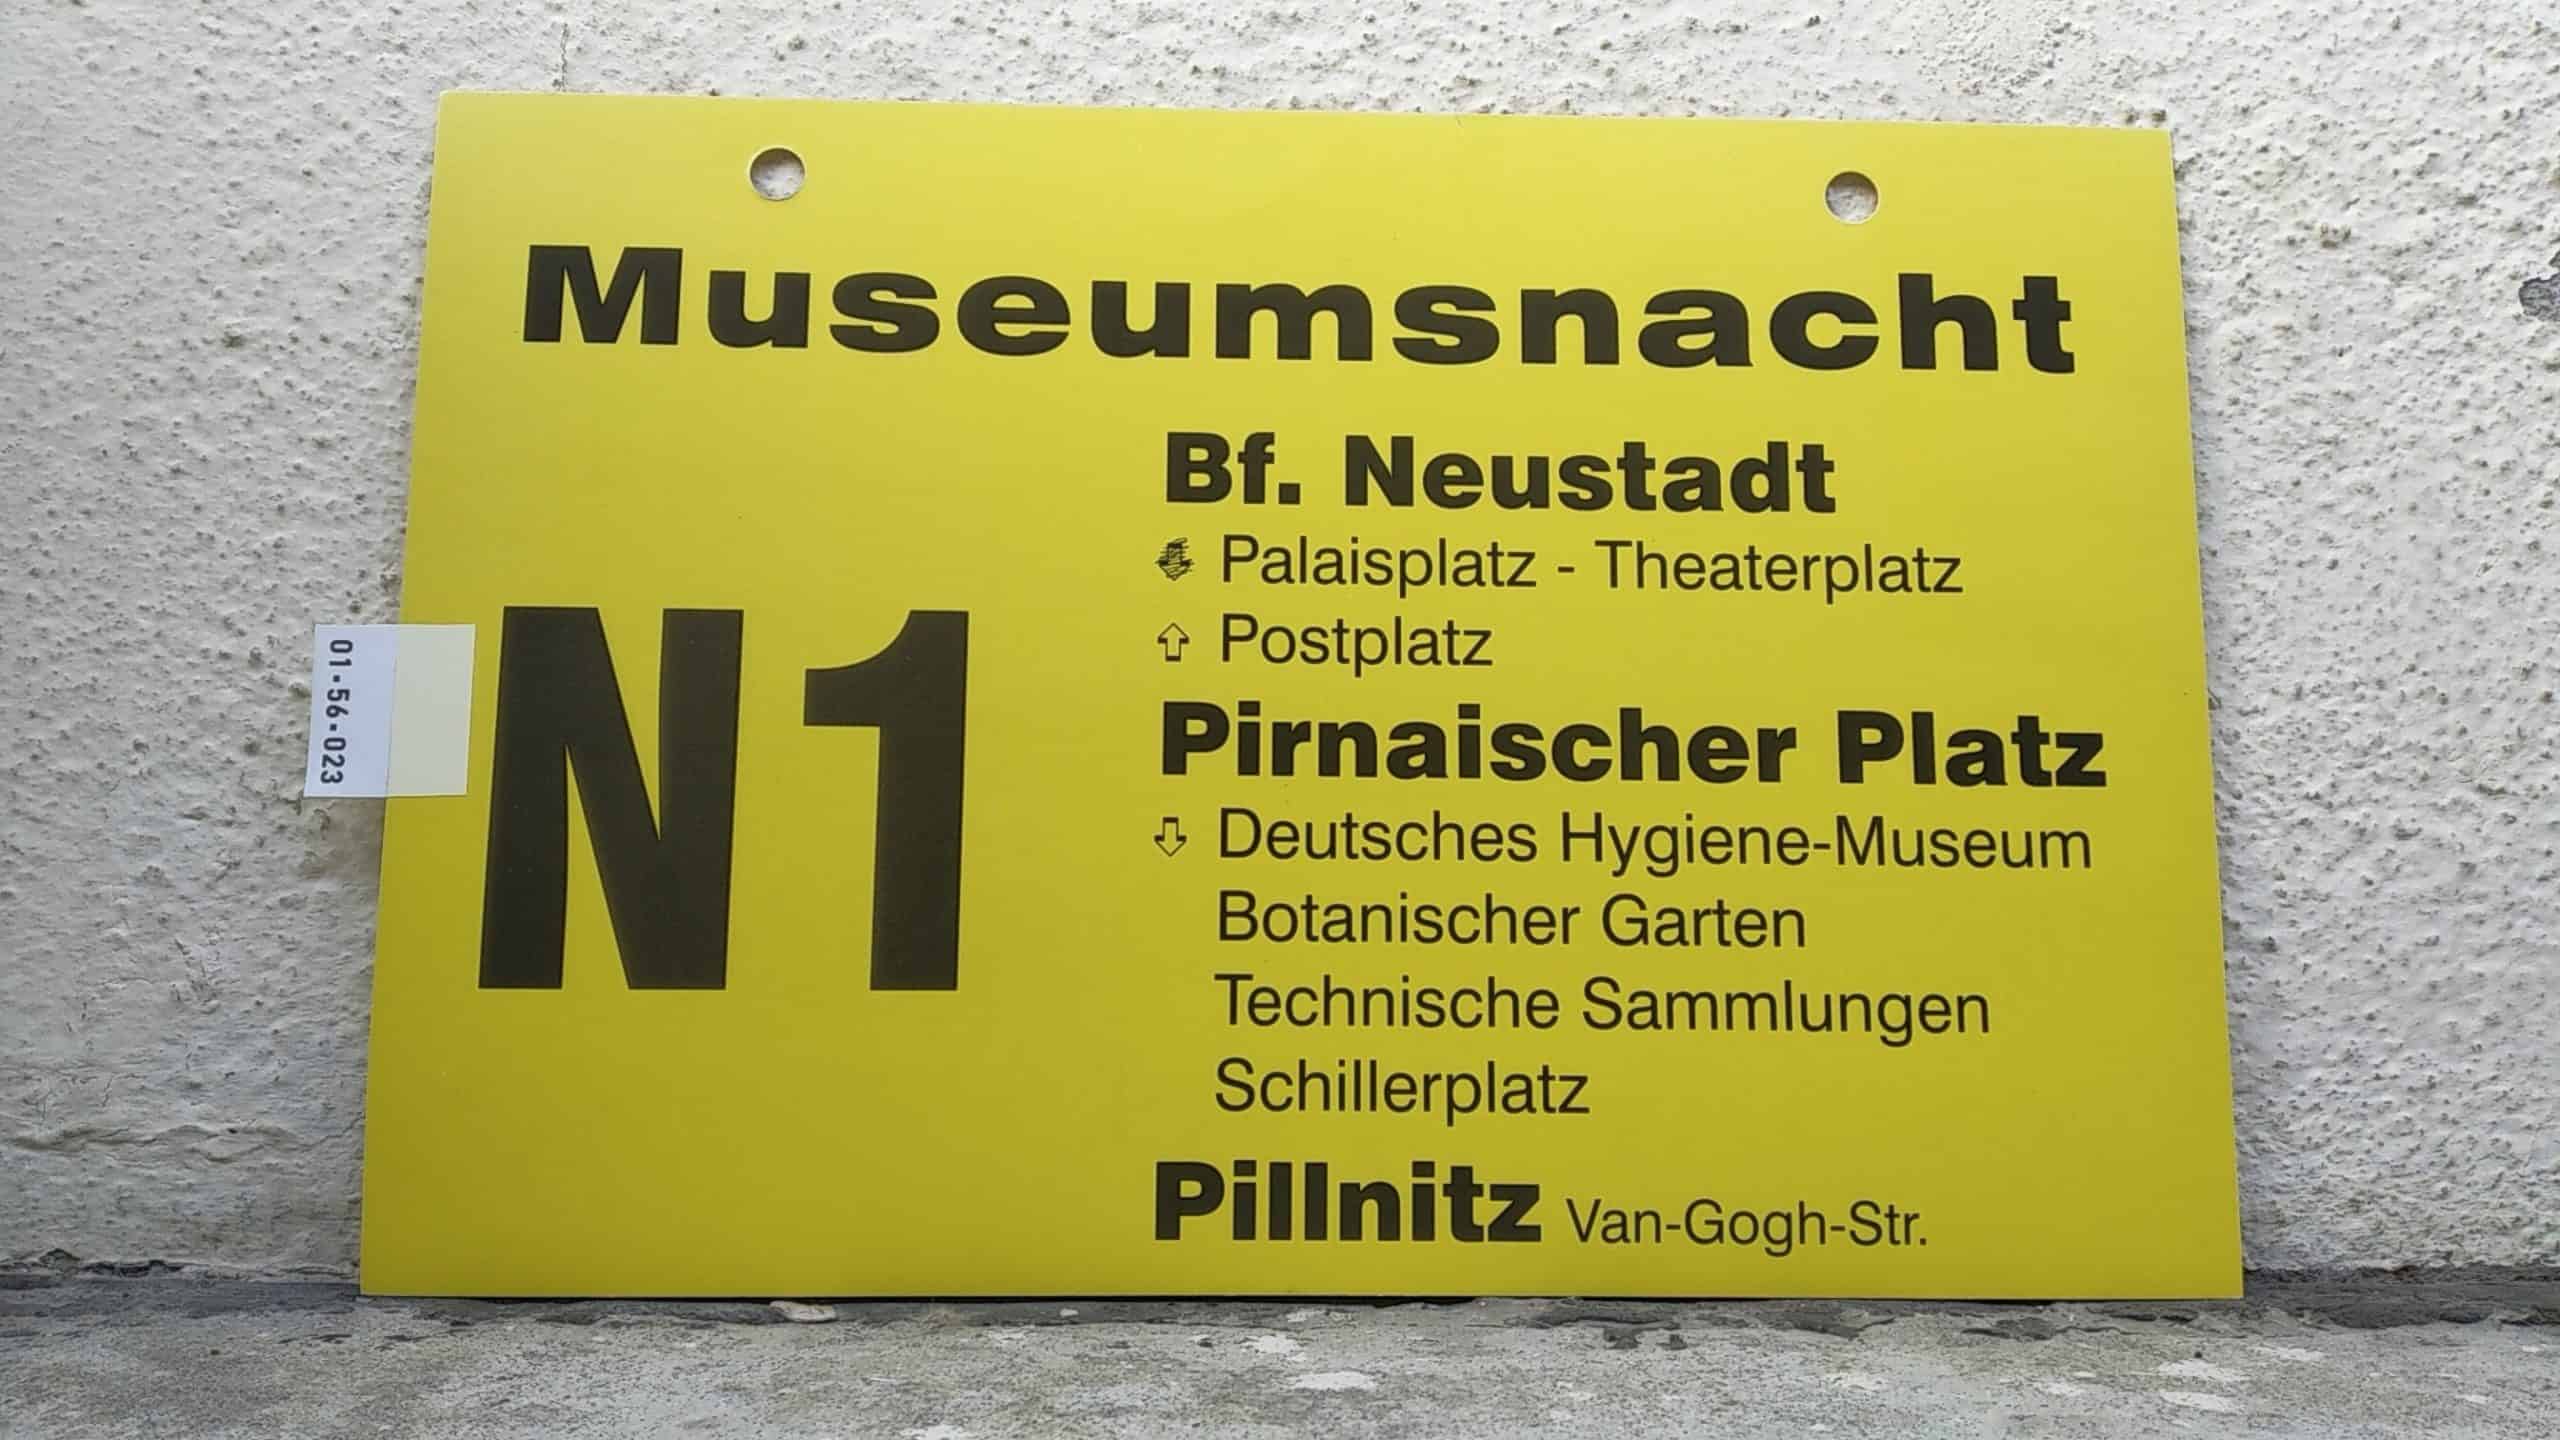 Ein seltenes Bus-Linienschild aus Dresden, anläßlich Museumsnacht N1 Bf. Neustadt - Pillnitz Van-Gogh-Str.